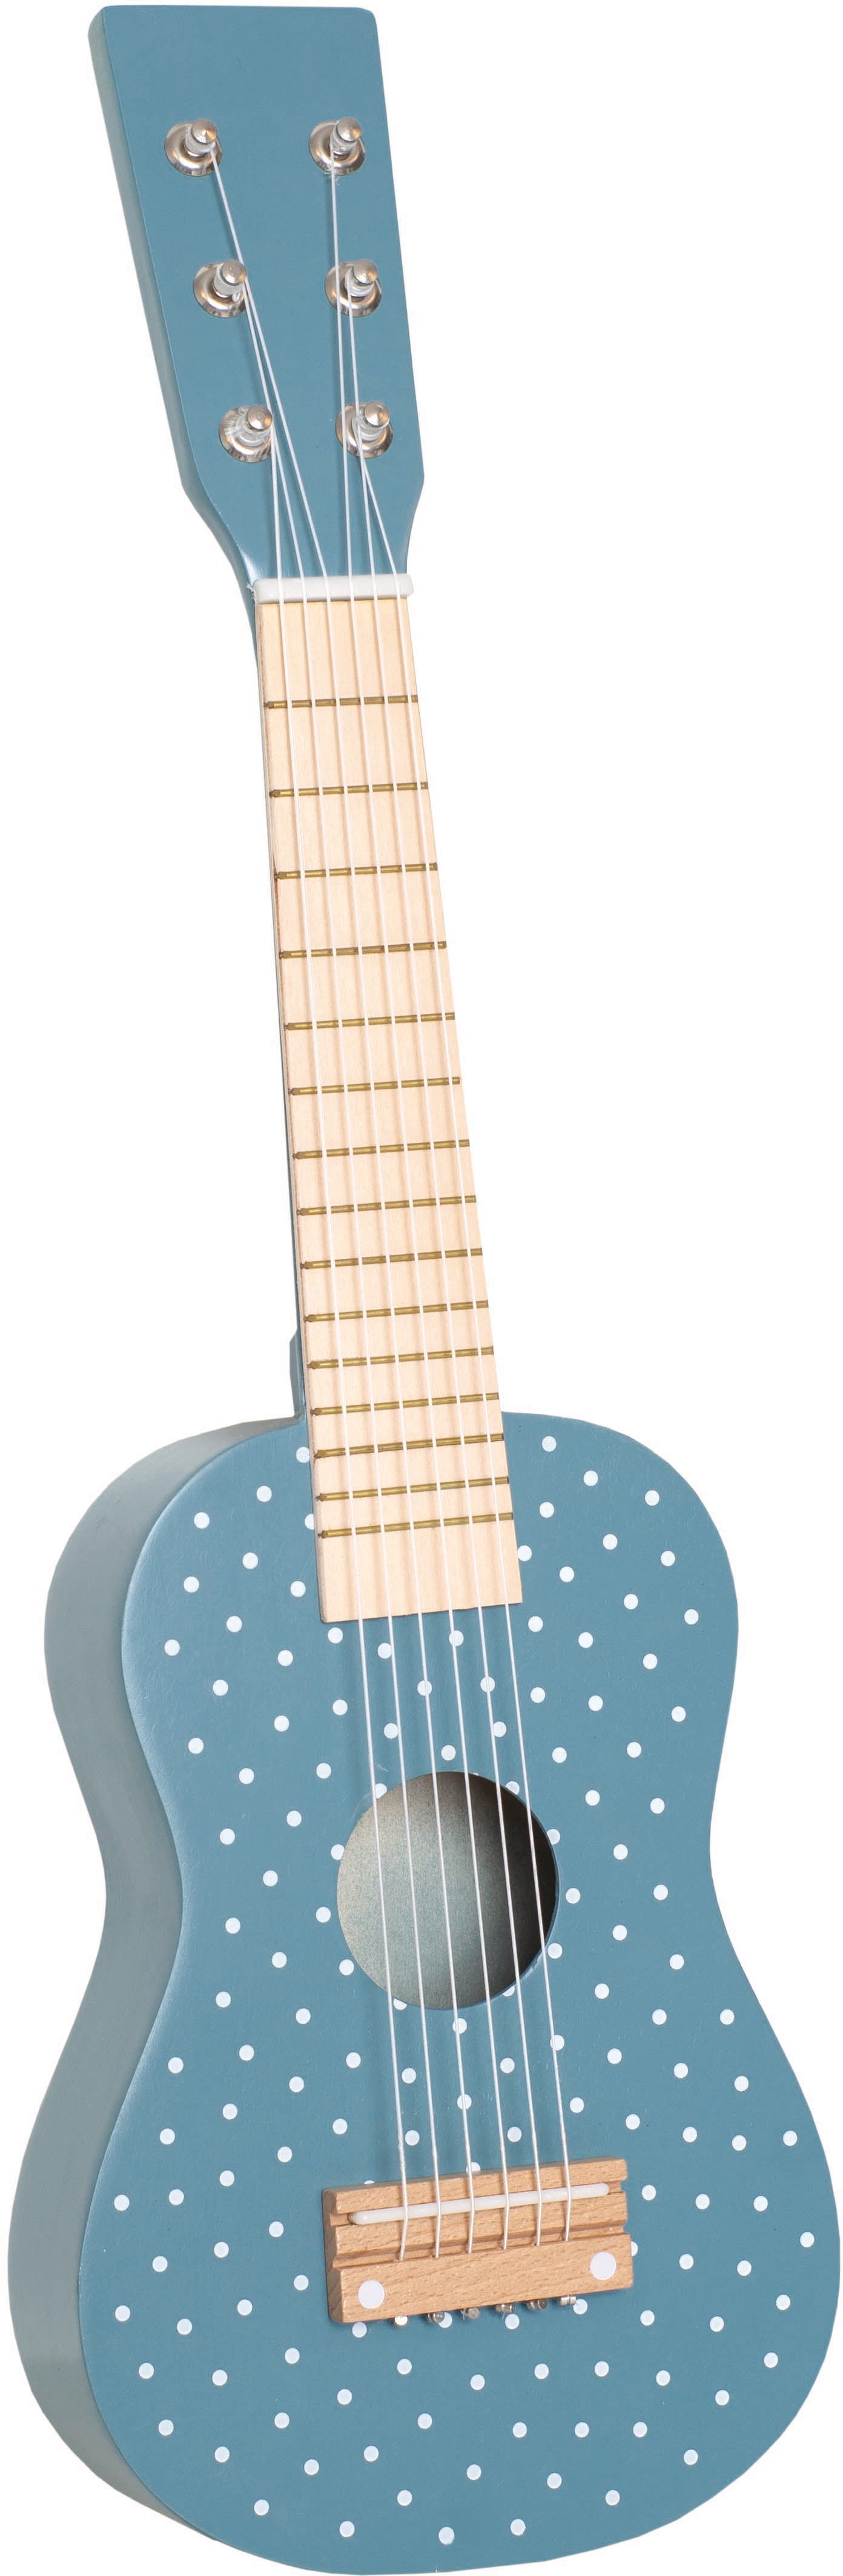 JABADABADO Guitar M14099 blue